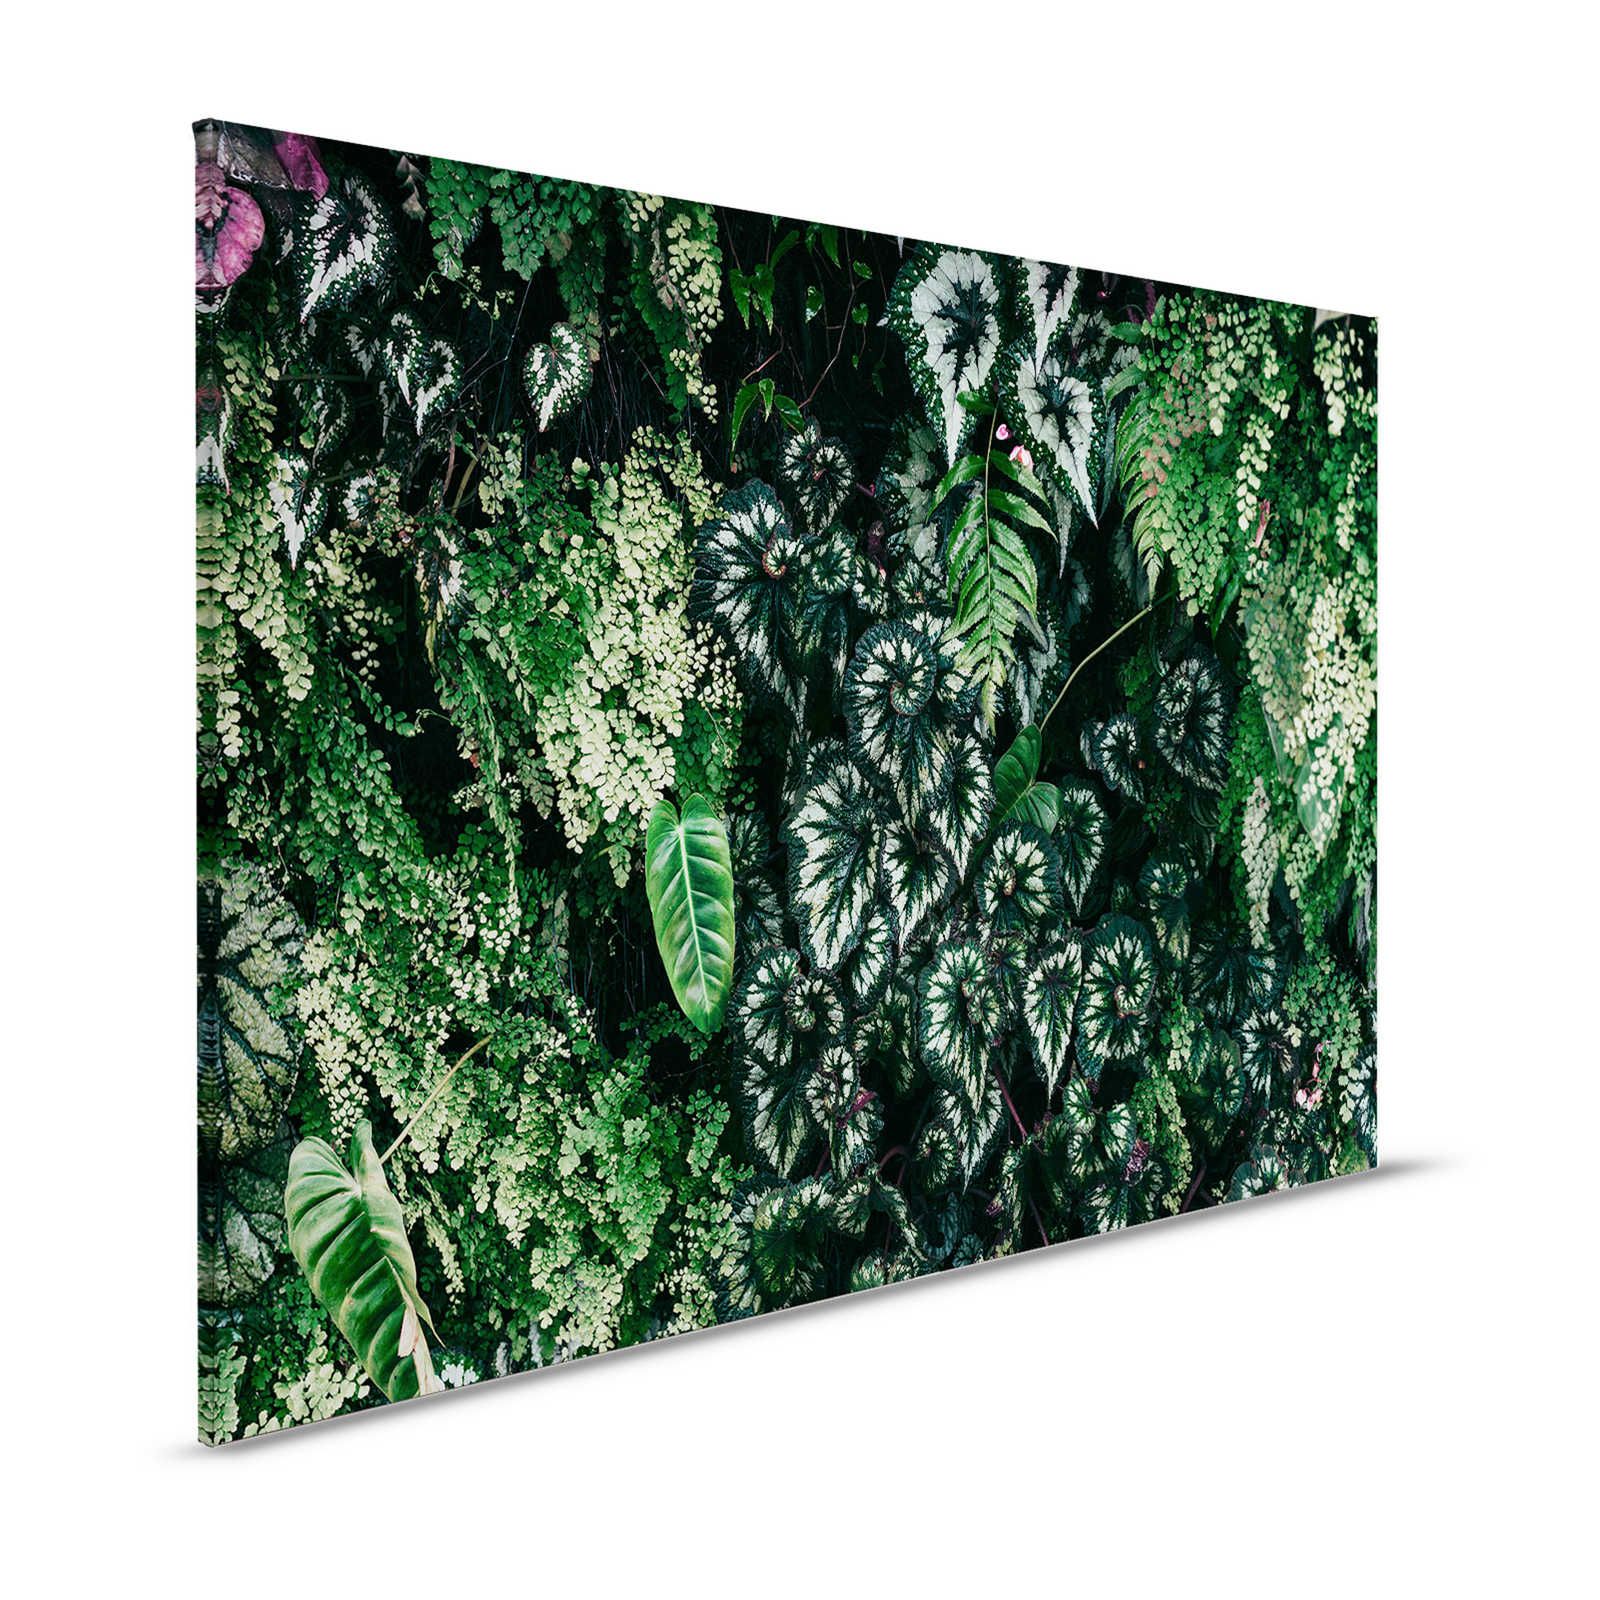 Deep Green 2 - Leinwandbild Blätterdickicht, Farne & Hängepflanzen – 1,20 m x 0,80 m
